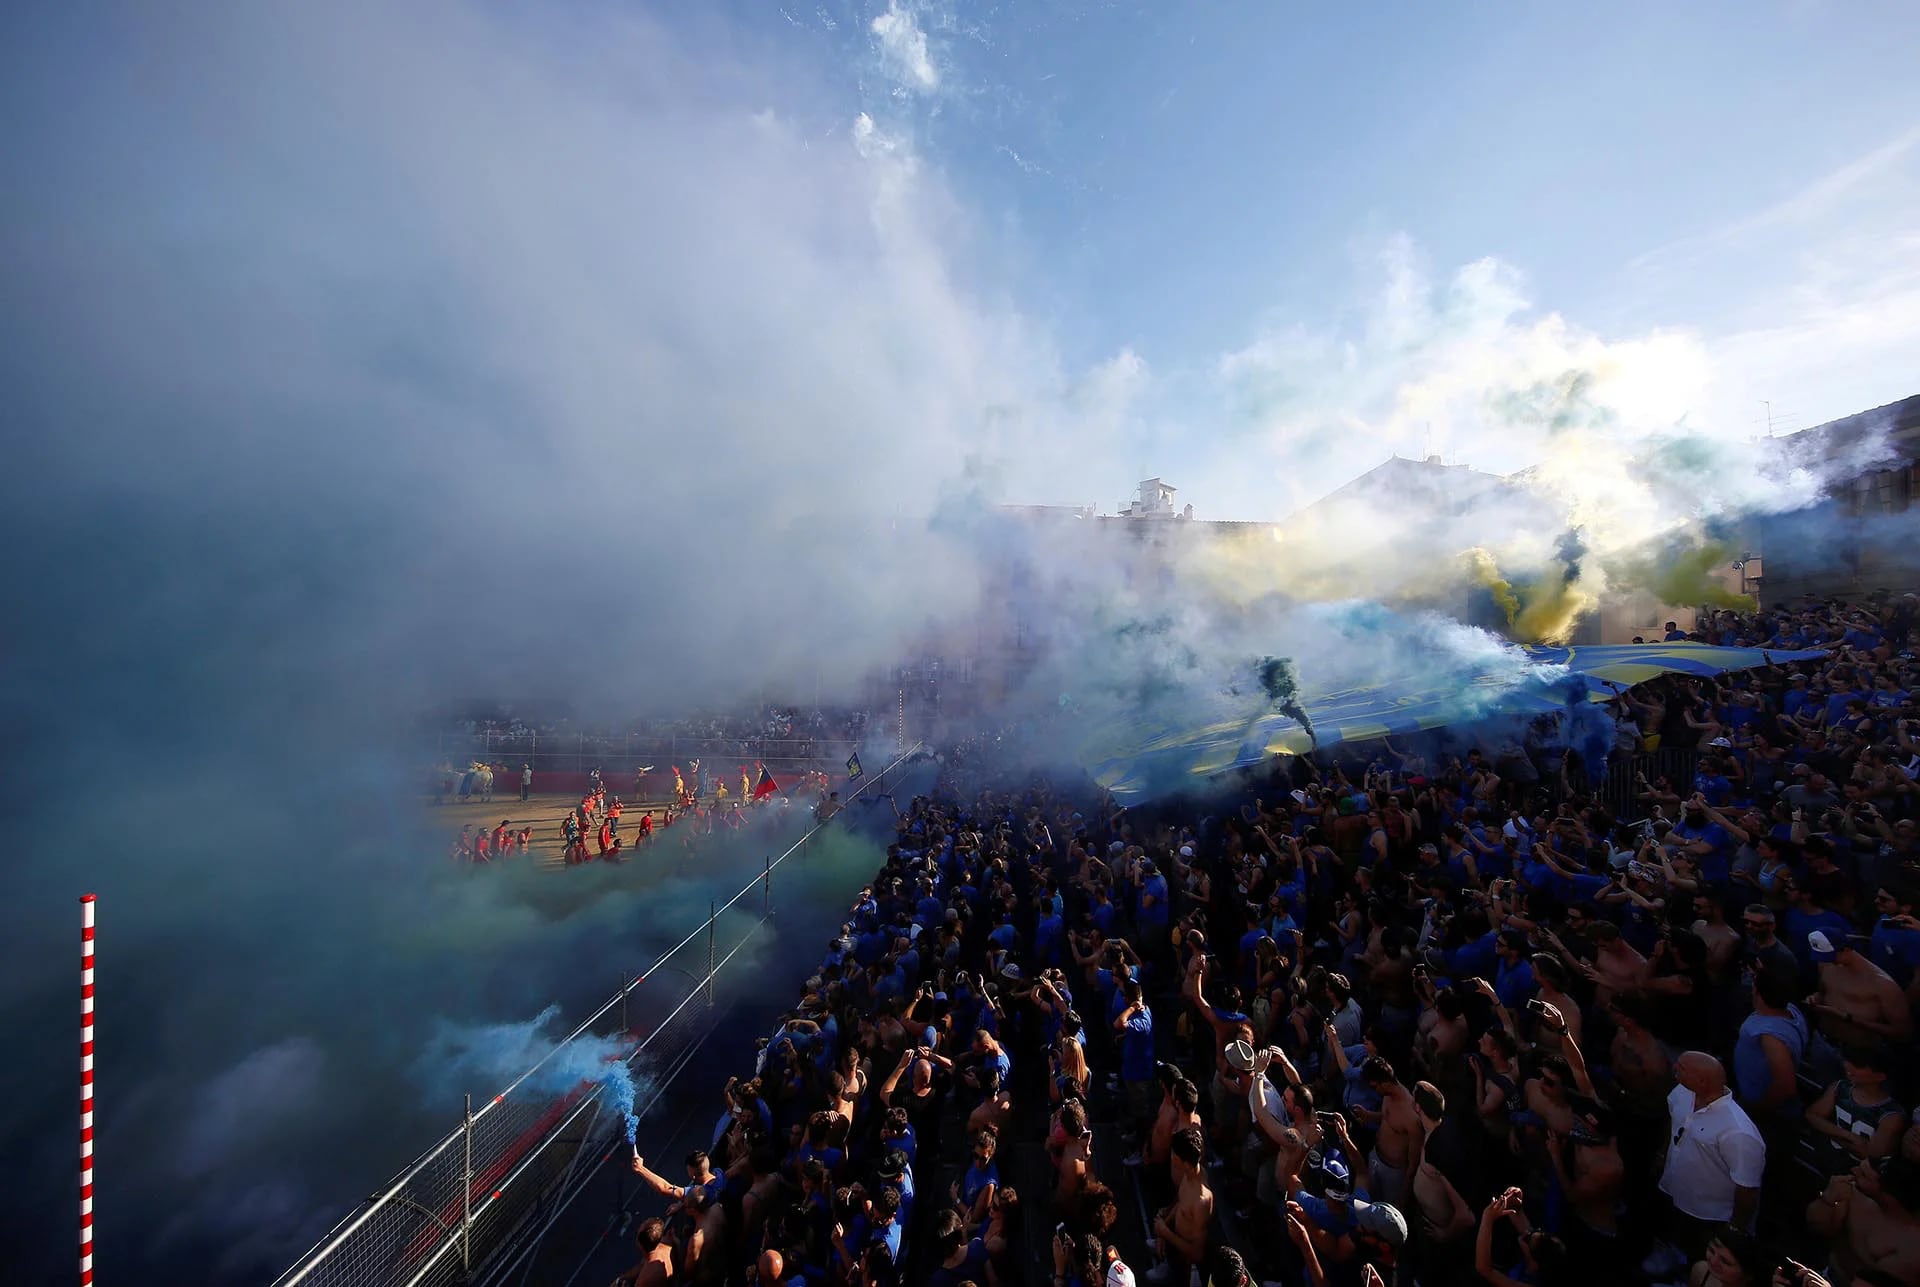 Fanáticos del equipo italiano Santa Croce celebran con bengalas y una gran bandera luego de un partido de Calcio Fiorentino, un estilo primitivo del fútbol convencional (Reuters)